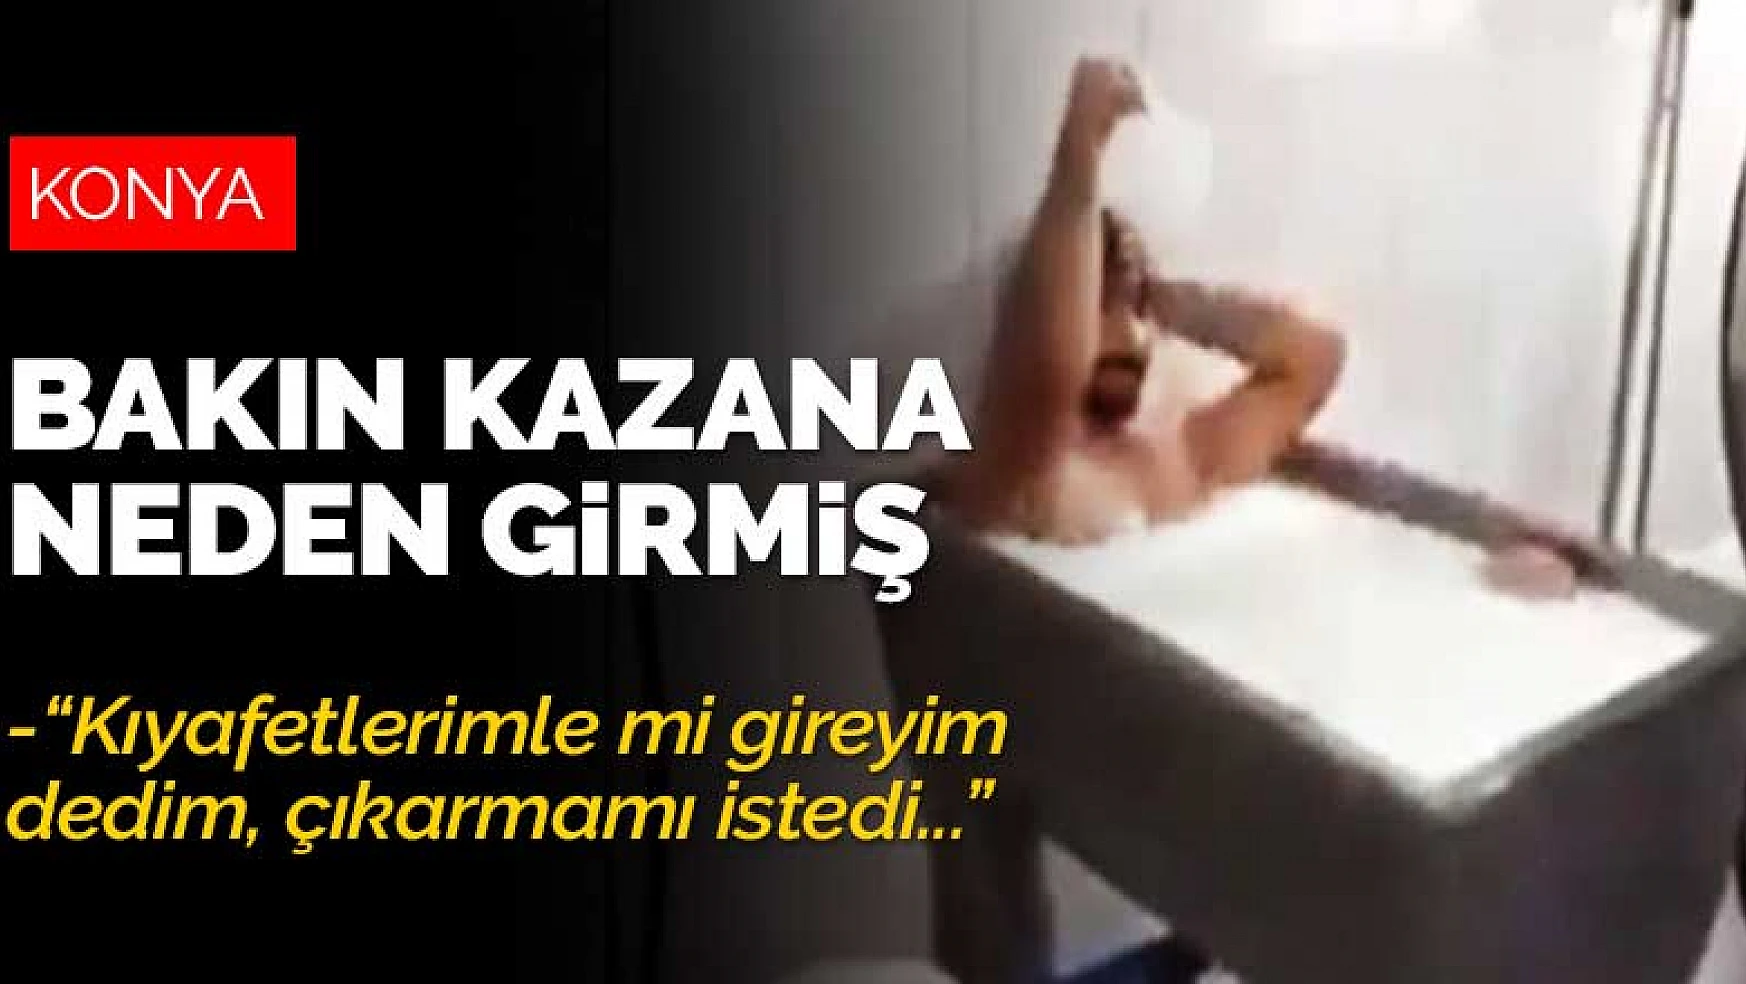 Konya'da tepkilere neden olan süt banyosu duruşması başladı! Kazana mahcup olduğu için girmiş